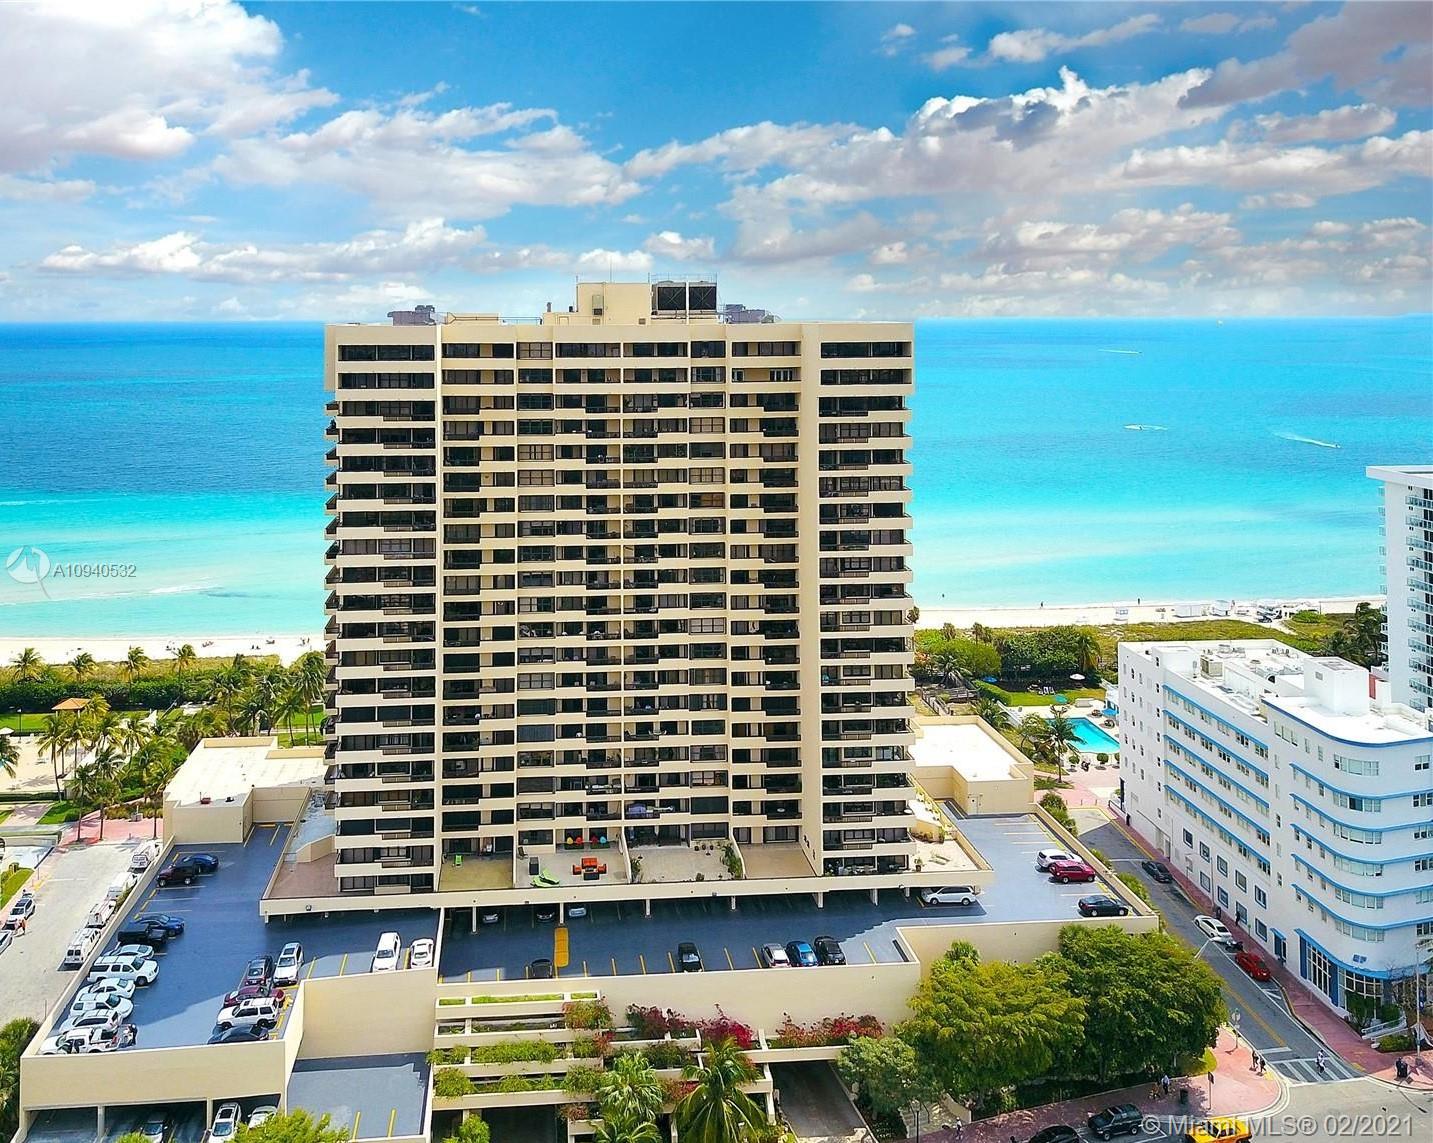 Club Atlantis Unit #1505 Condo for Sale in Mid-Beach - Miami Beach